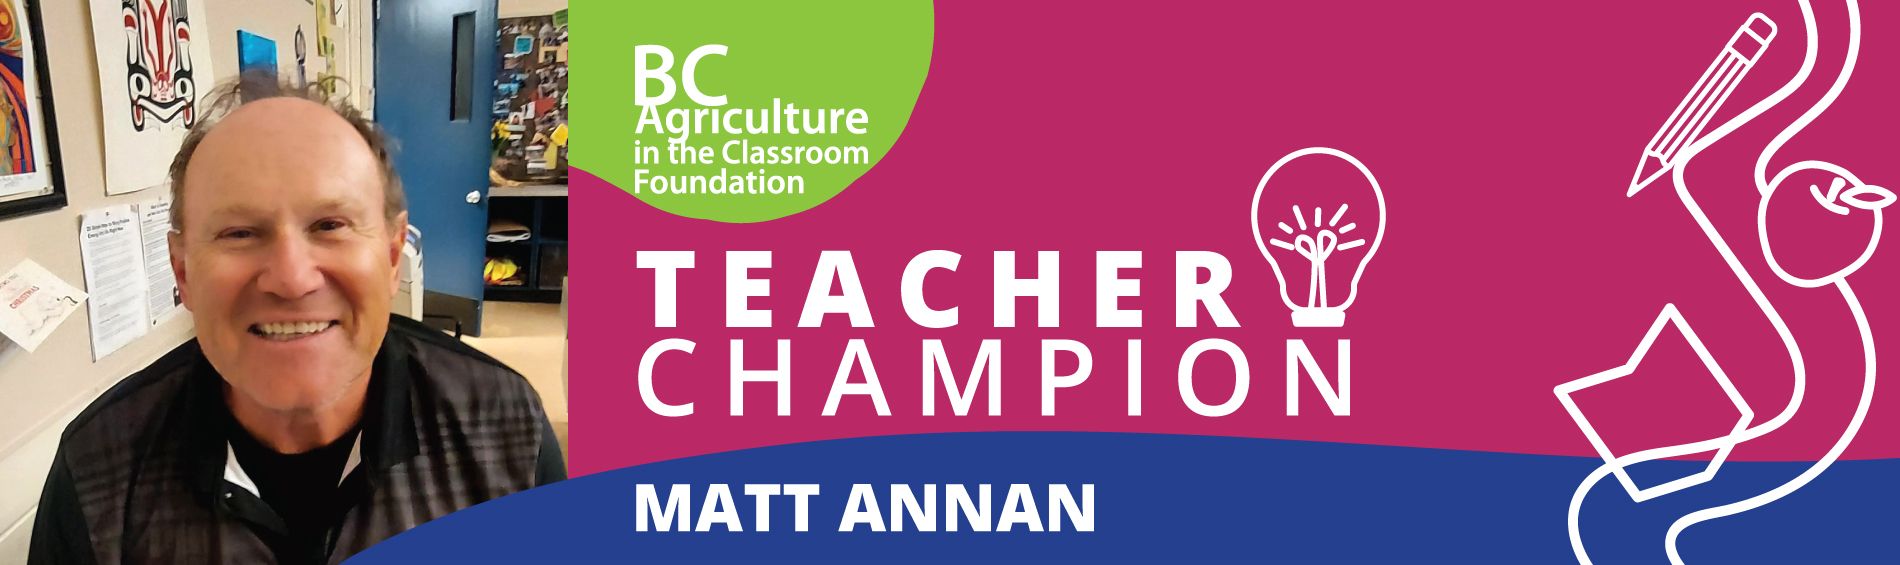 Matthew Annan - Teacher Champion 